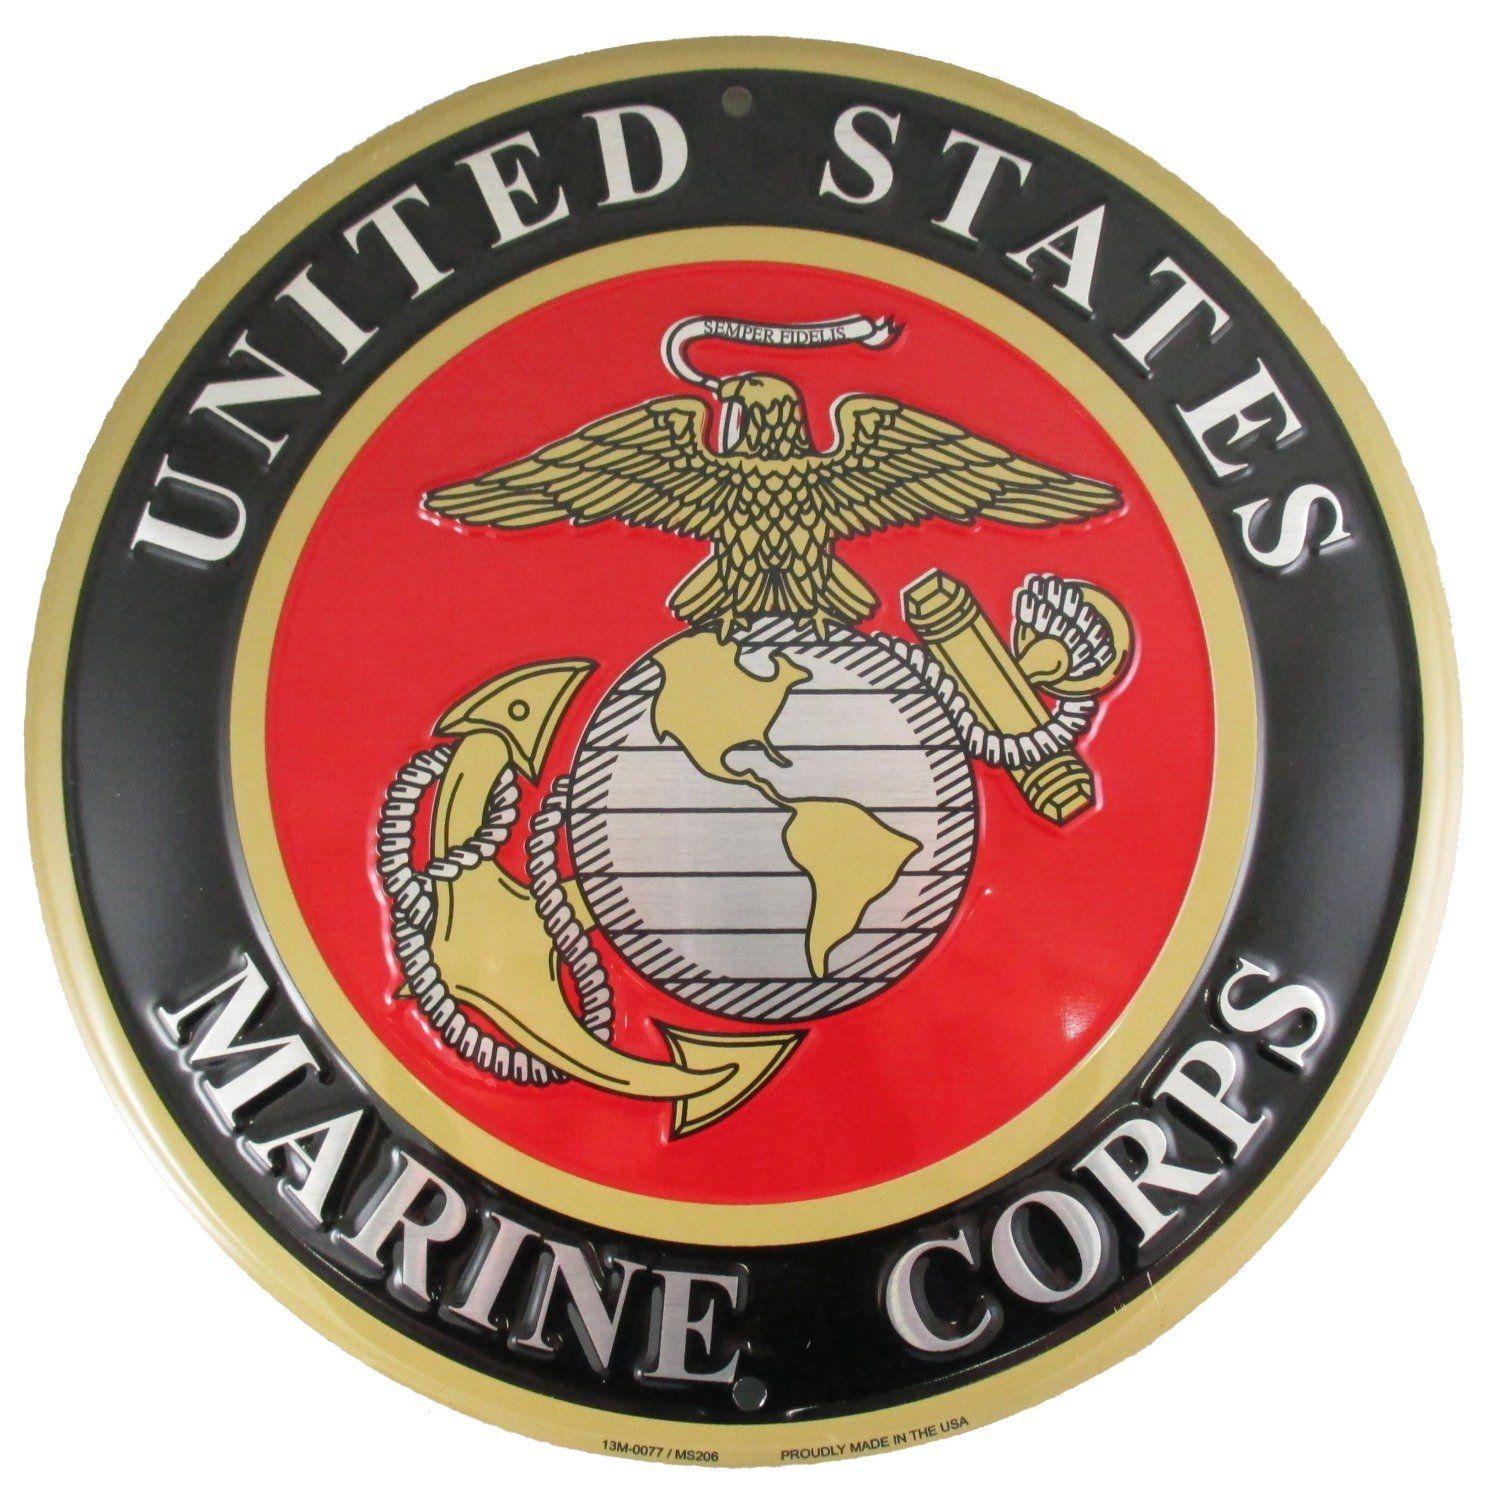 United States Logo - Amazon.com: United States Marines Emblem Metal Sign - US Marine ...